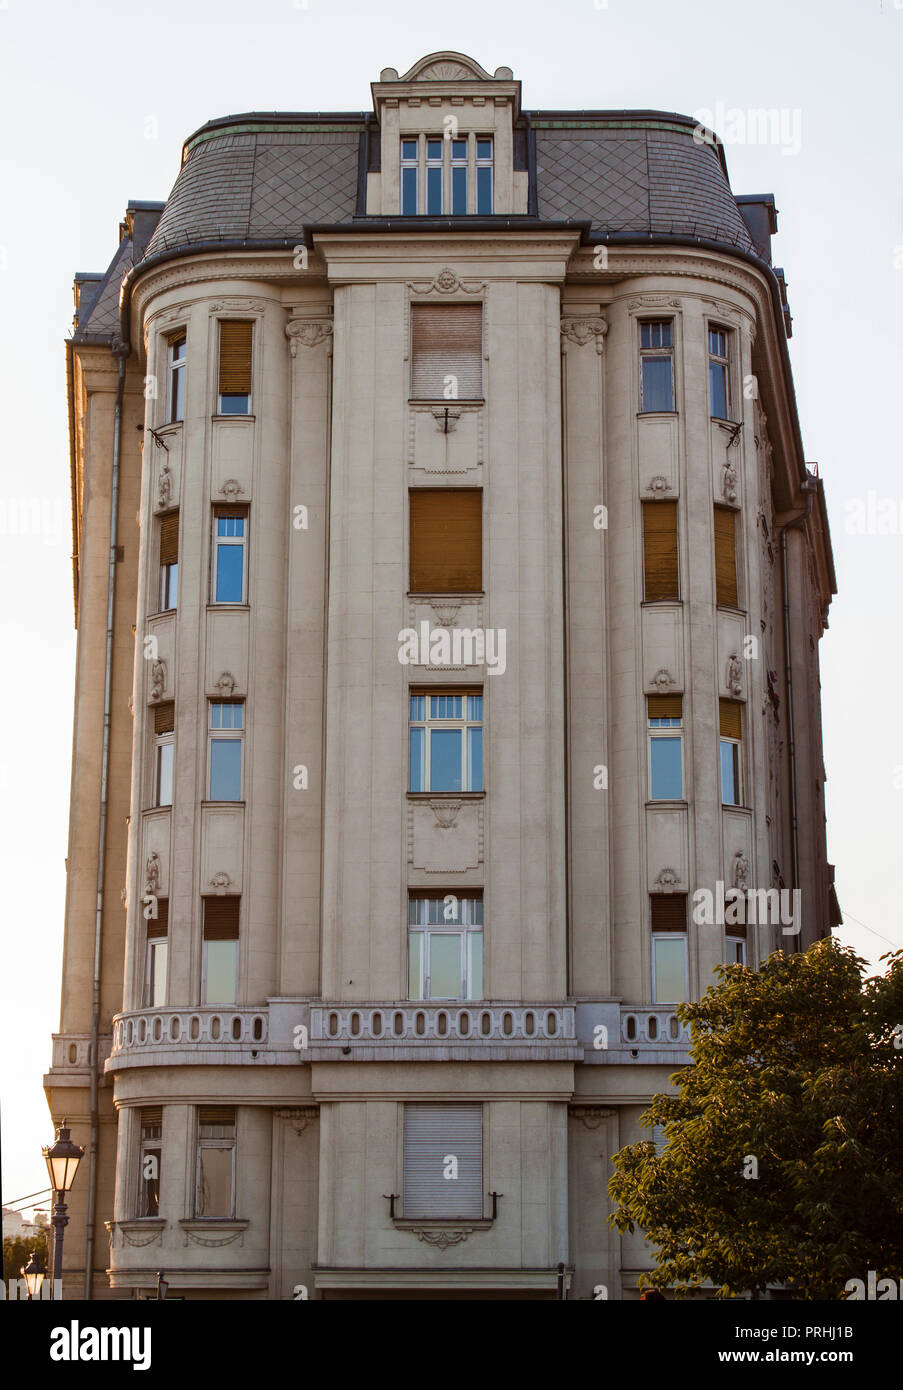 Un beau bâtiment historique dans la vieille ville de Budapest, Hongrie, Europe de l'Est. Façade détaillée d'une vieille maison, des modèles, des ornements. Banque D'Images